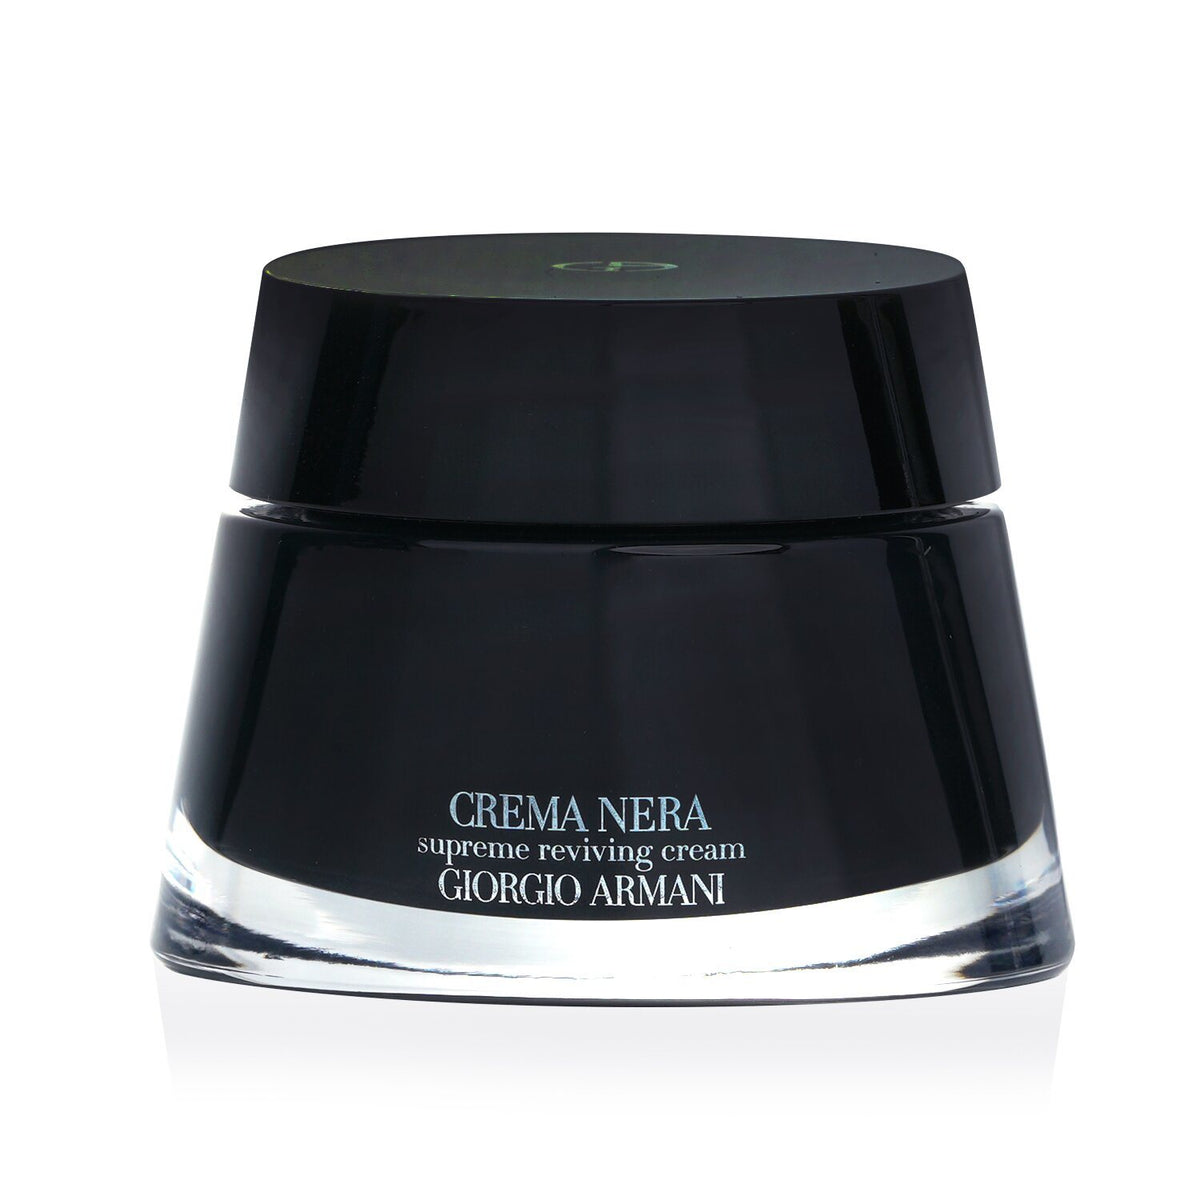 GIORGIO ARMANI - Crema Nera Supreme Reviving Cream 989697 50ml/1.6oz - Premium Moisturizers from Doba - Just $310! Shop now at Ida Louise Boutique